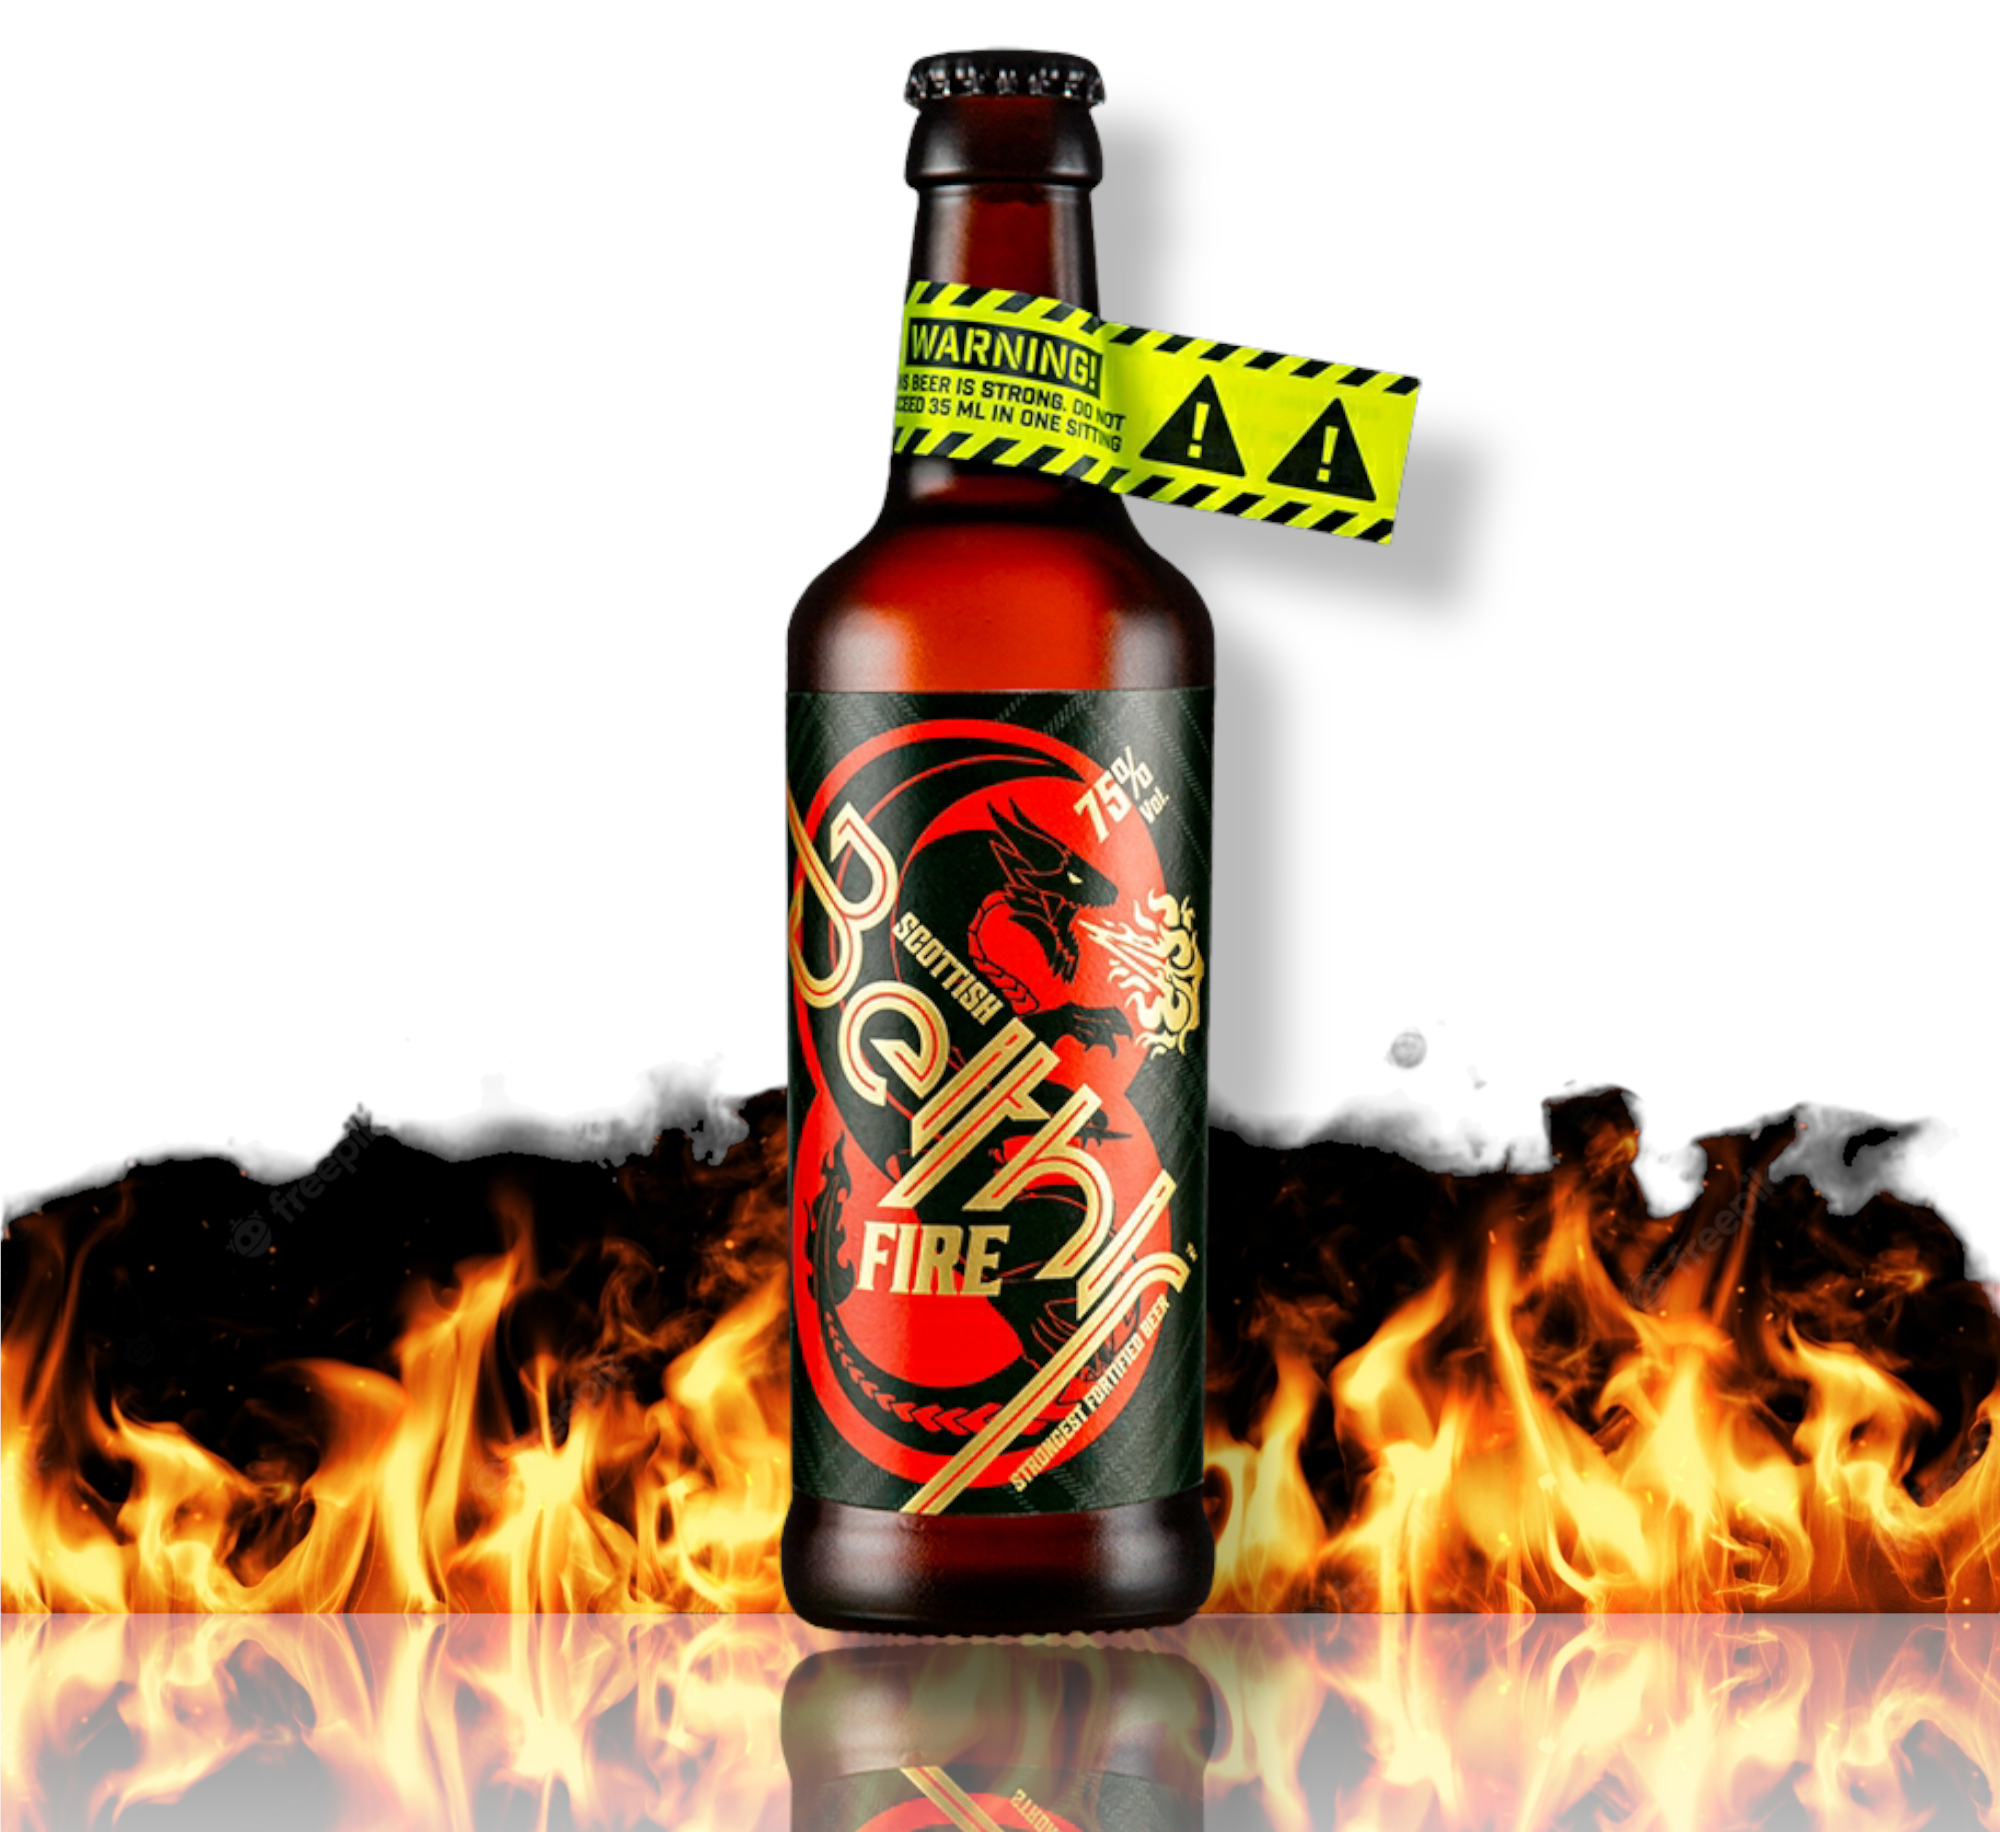 Scottish Beithir Fire™ Bier - Das stärkste Bier der Welt mit 75% Alk.